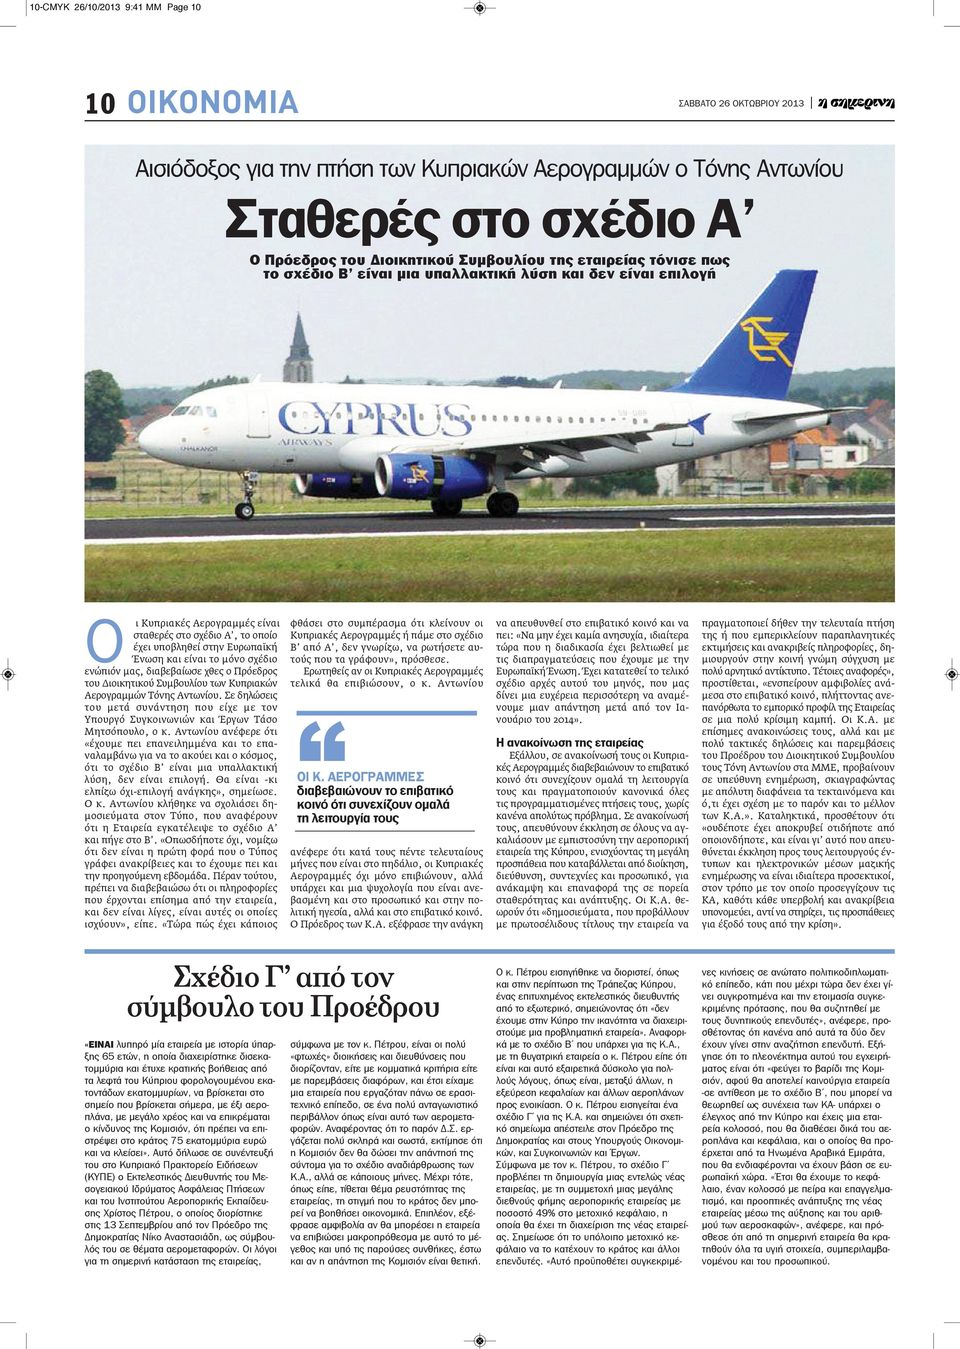 μας, διαβεβαίωσε χθες ο Πρόεδρος του Διοικητικού Συμβουλίου των Κυπριακών Αερογραμμών Τόνης Αντωνίου.